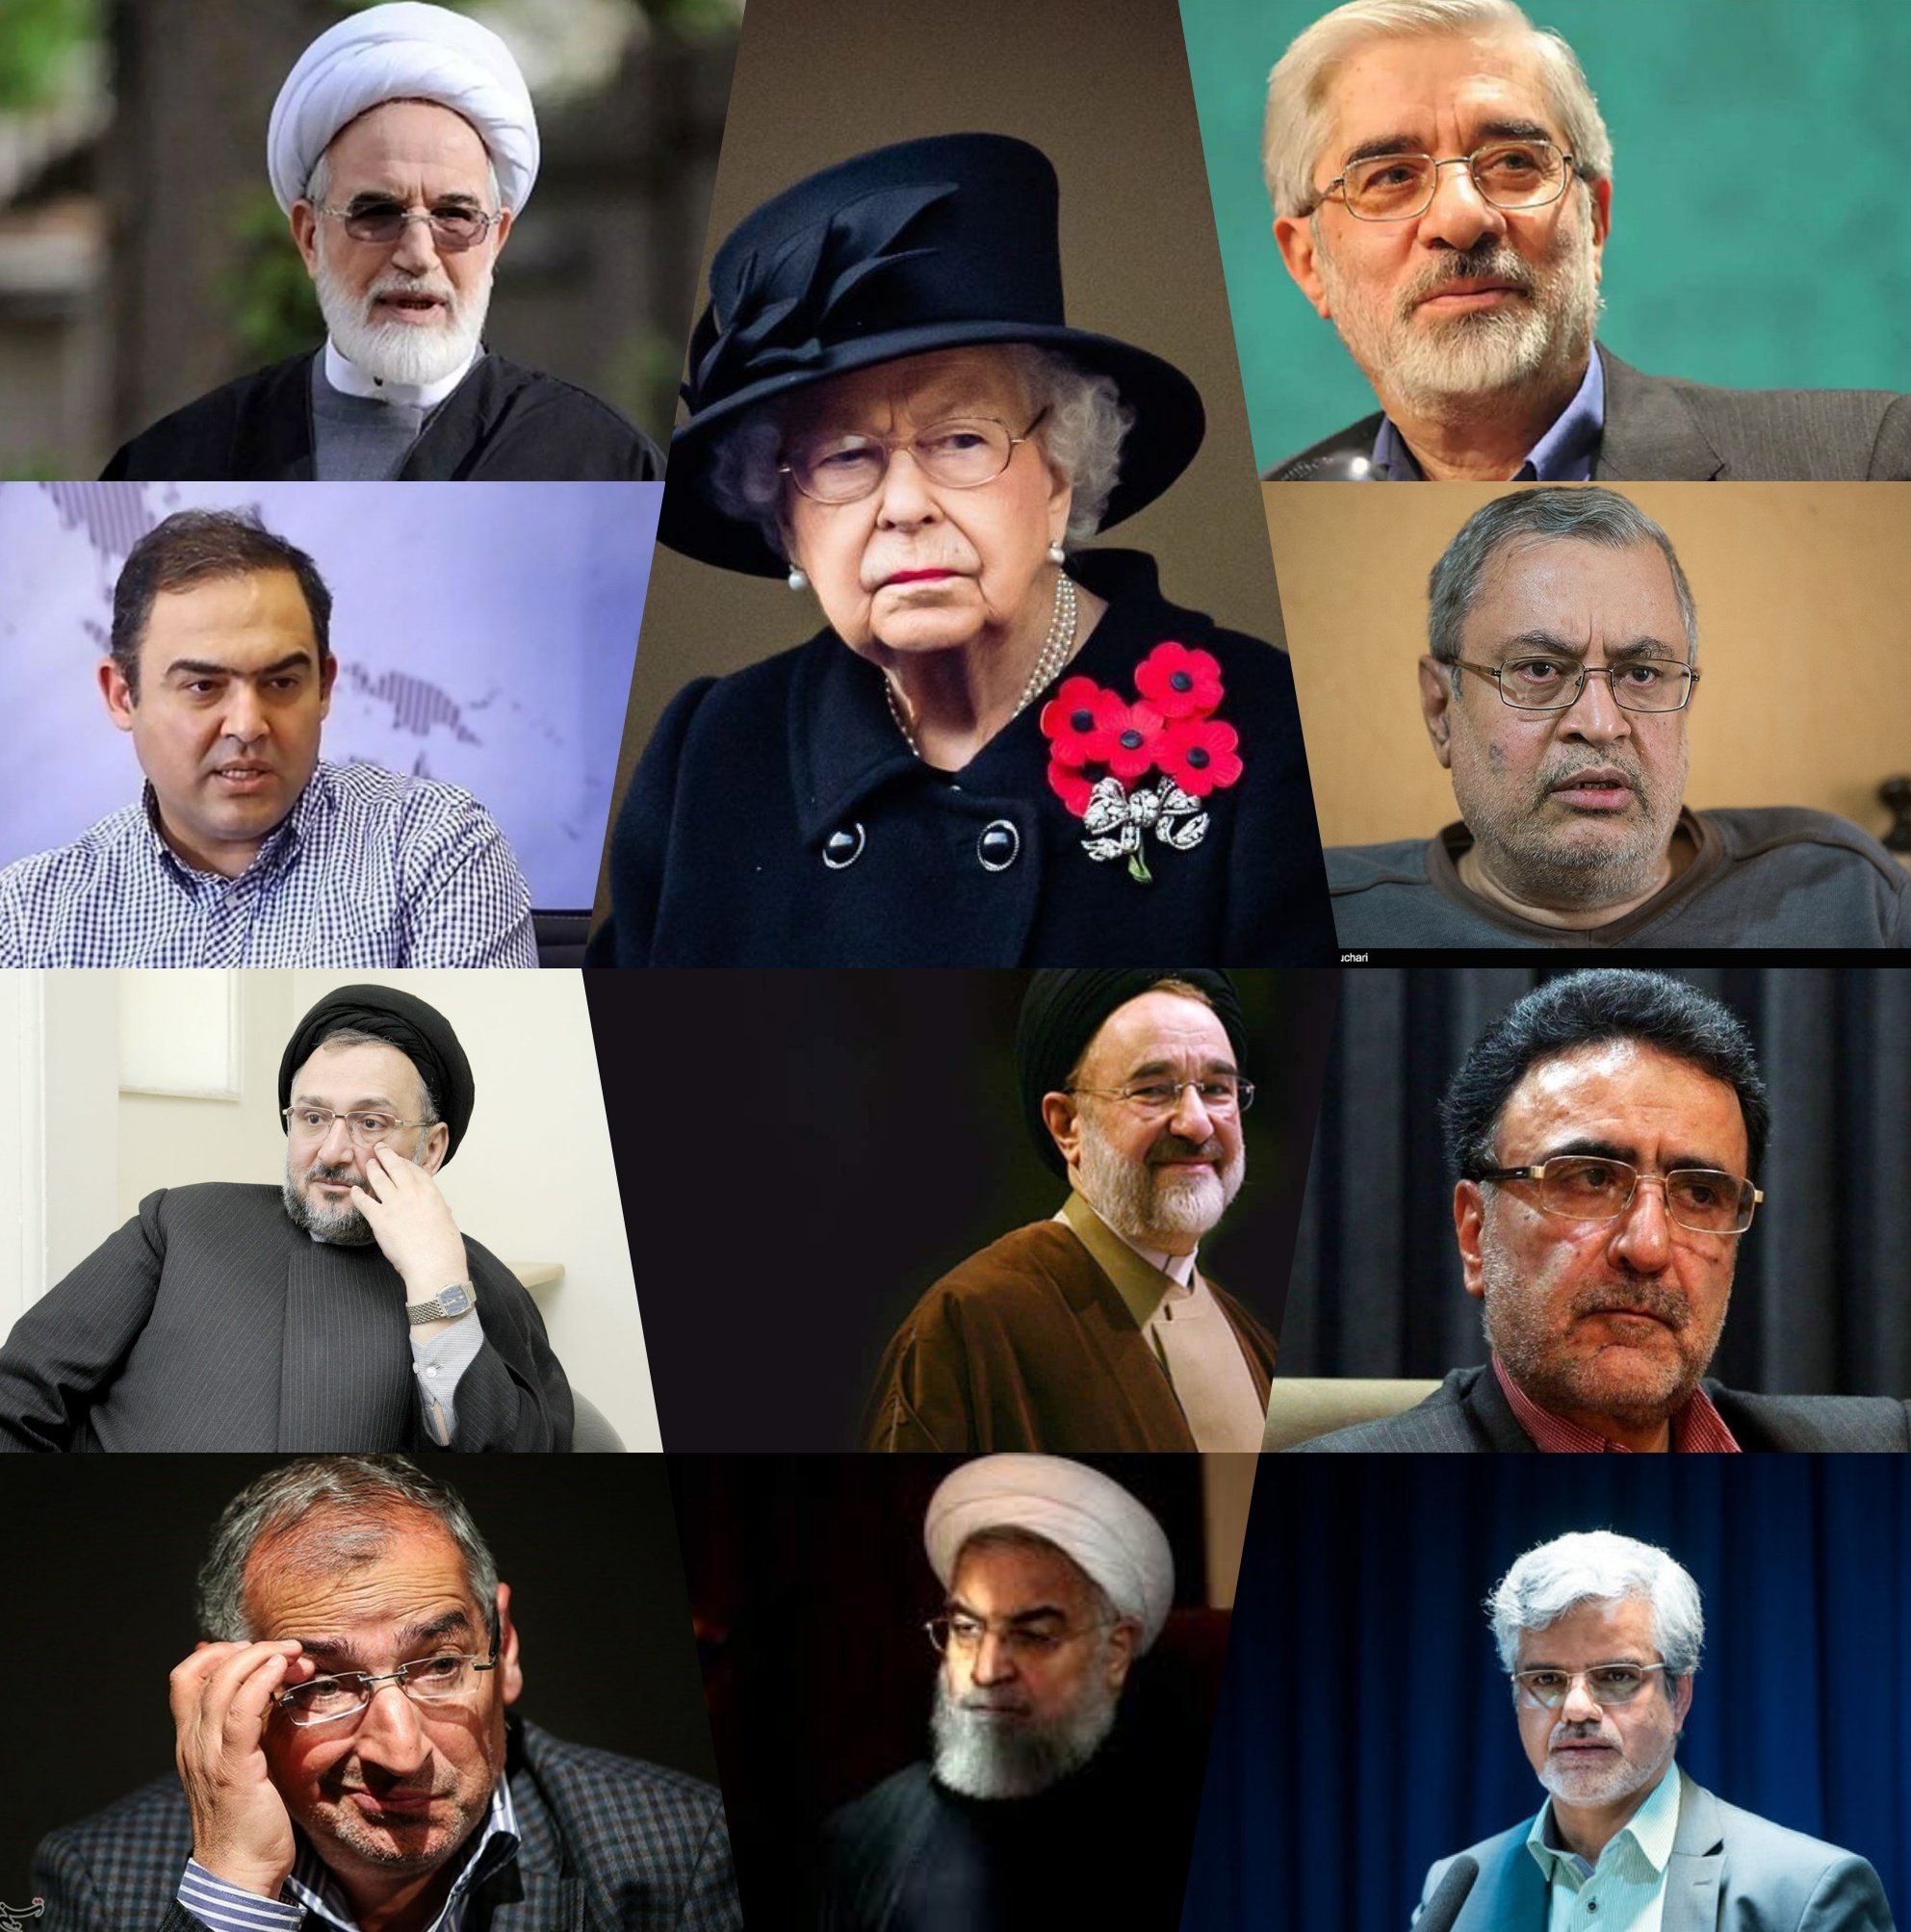 بهترین میراث انقلاب اسلامی ایران، اسلامی بودن اوست که اسطوره ساز حقانیت انقلاب اسلامی شده است